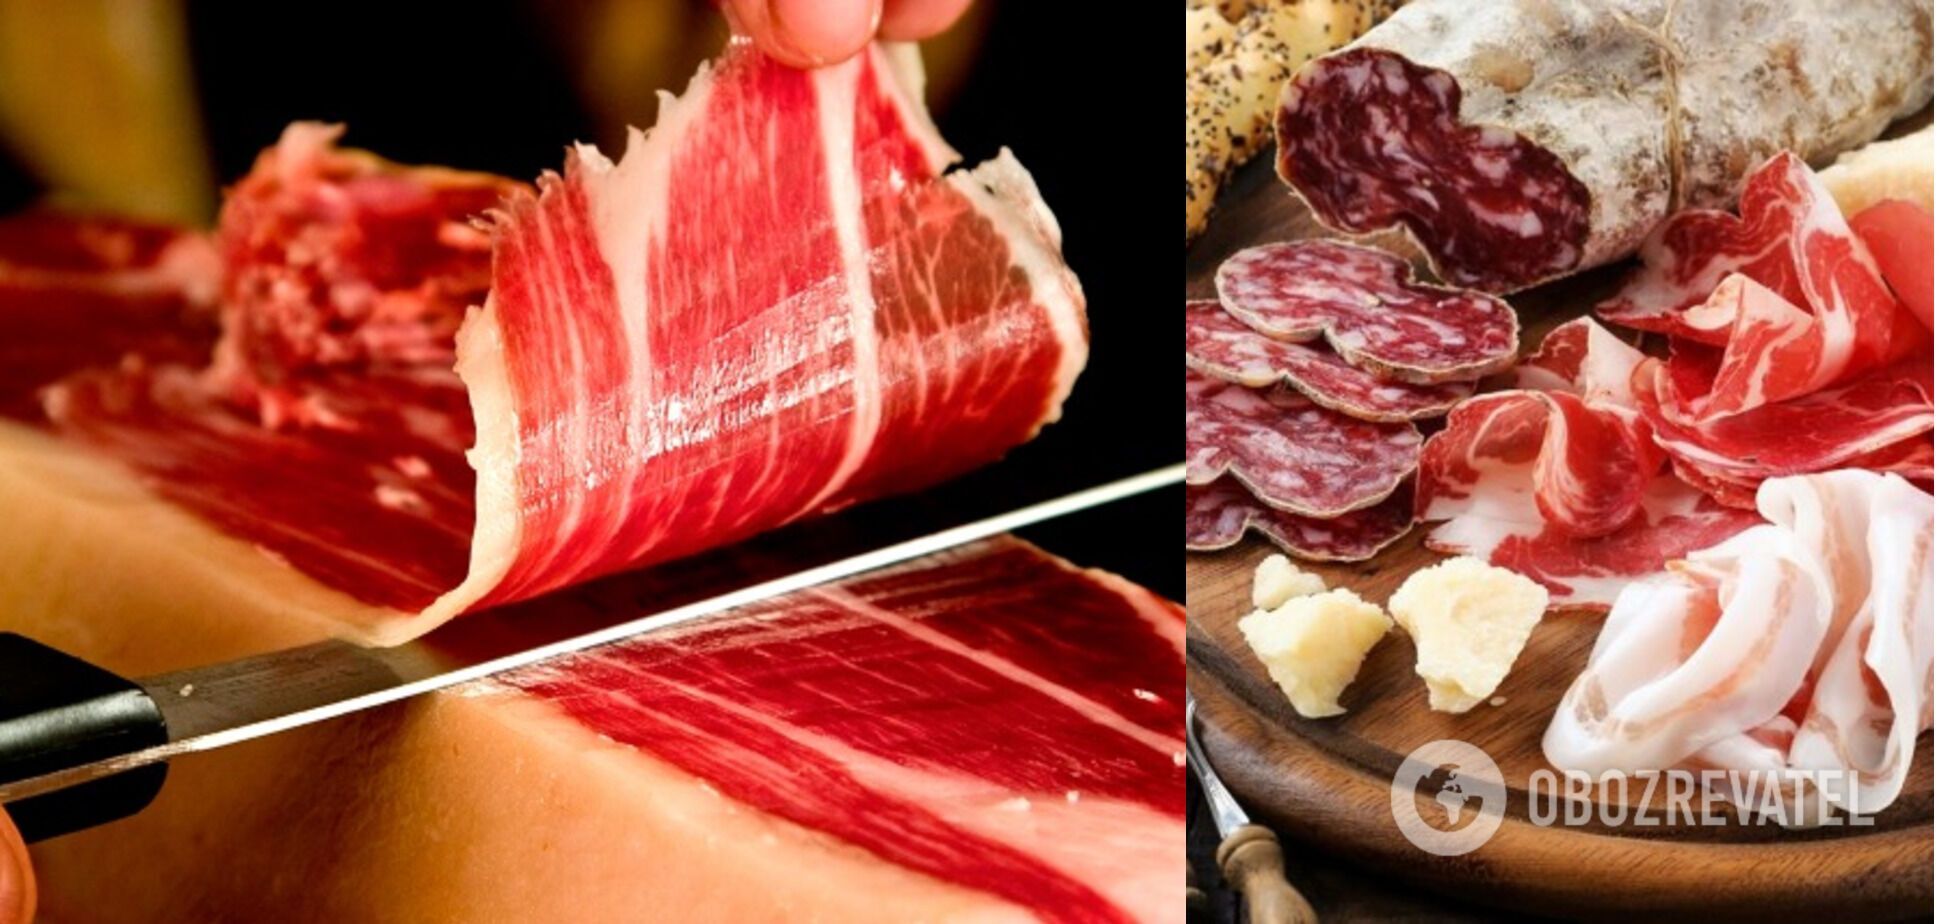 Люди по всему миру едят сырую говядину - специалисты рассказали, что будет с организмом при употреблении сырого мяса